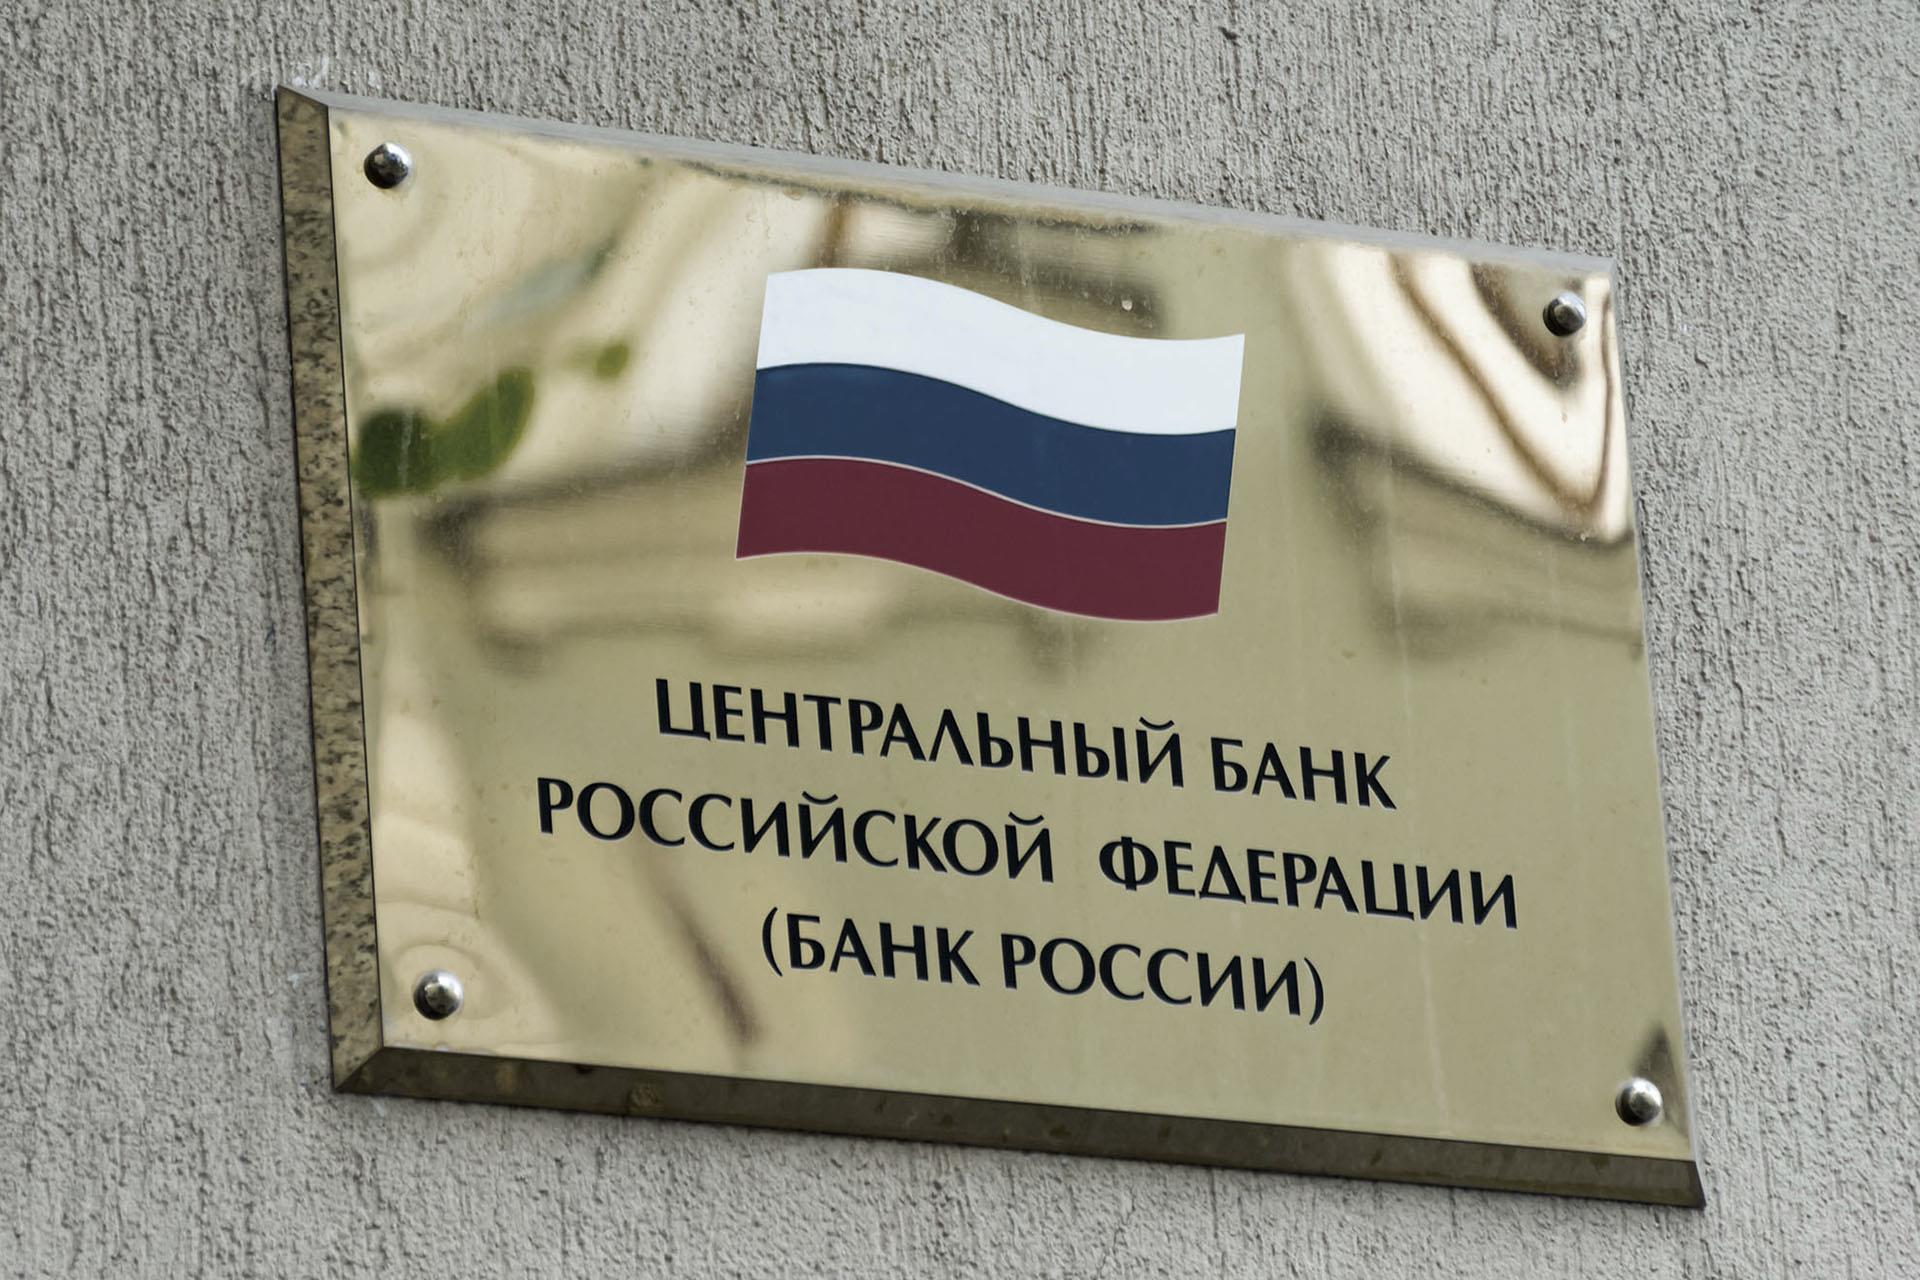 Банк России выделил основные проинфляционные риски для базового прогноза